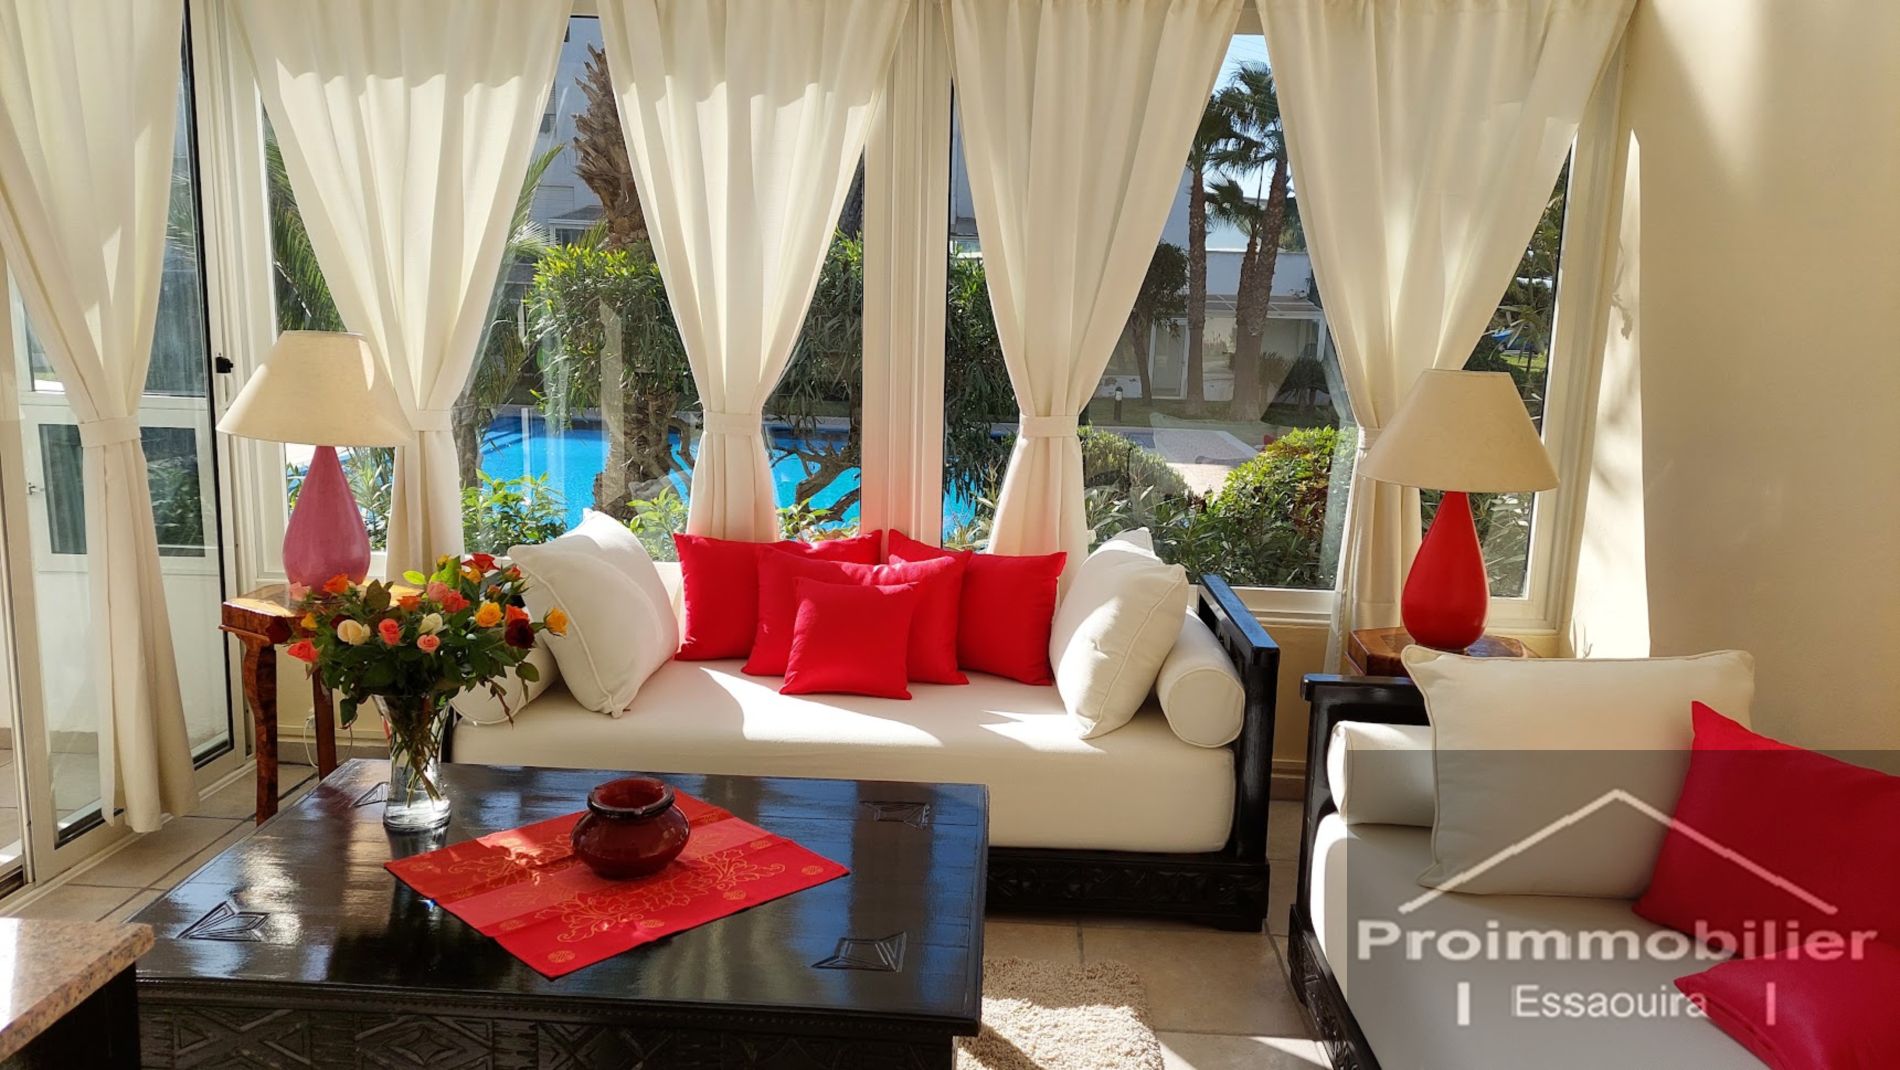 21-11-02-VA  Bel appartement 101m² avec Terrasse vue mer a vendre a Essaouira